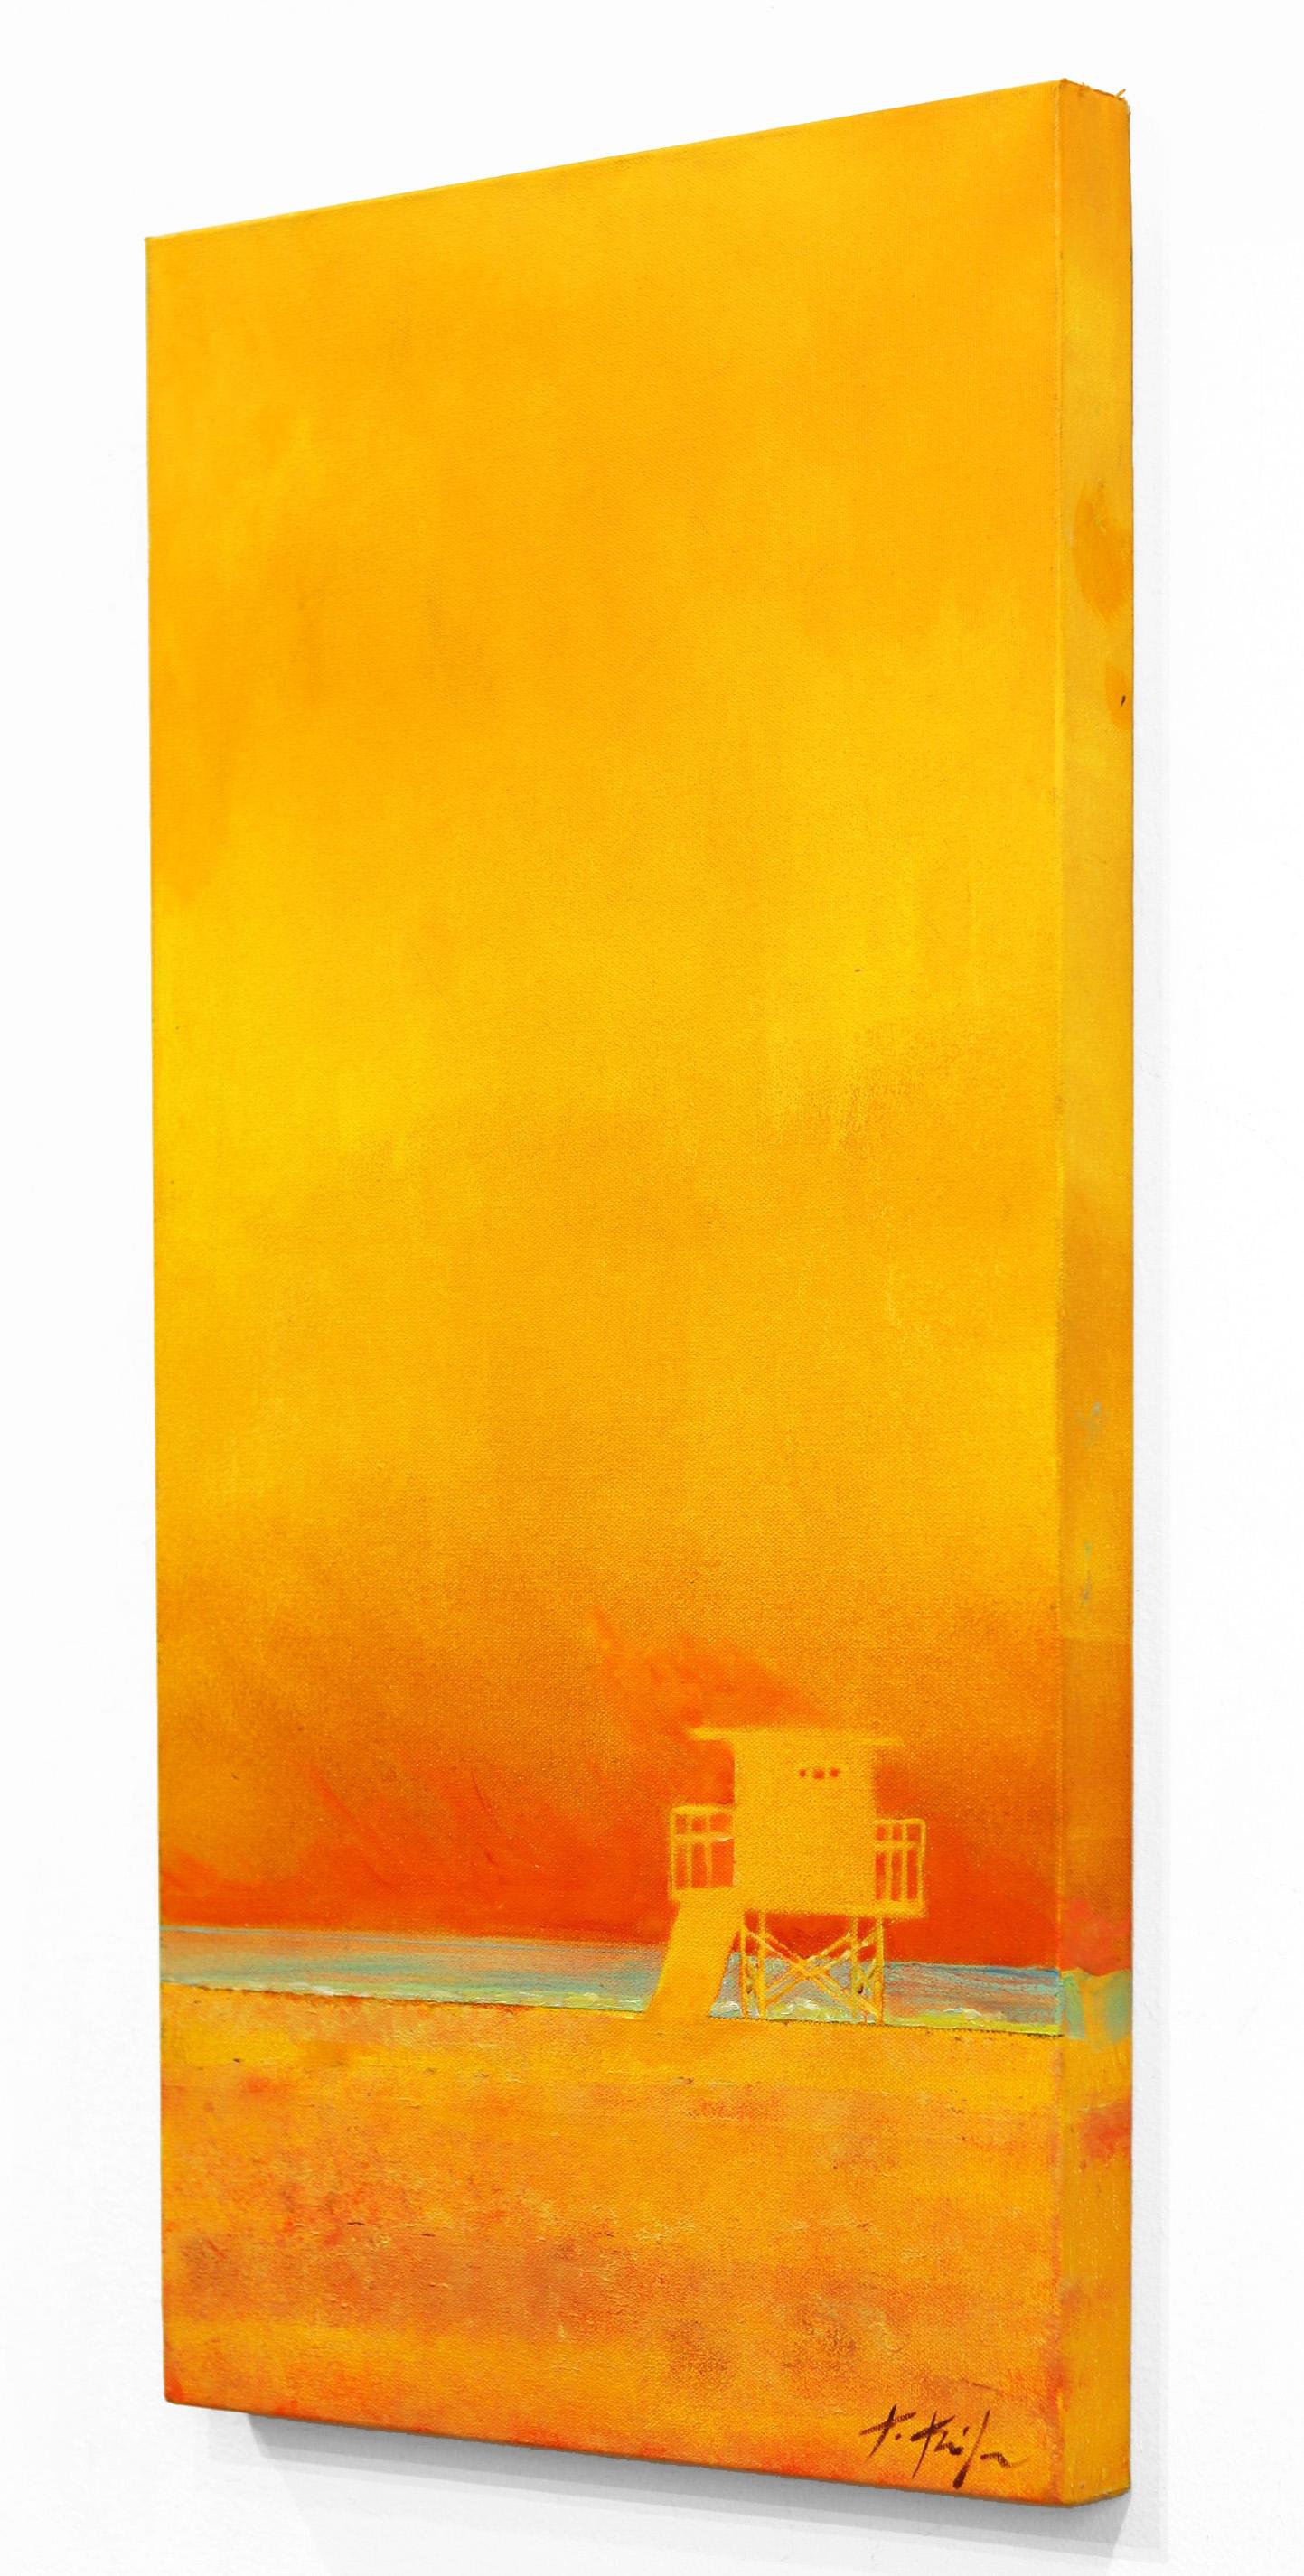 Kathleen Keifers Originalkunstwerke sind eine der bedeutendsten Ausdrucksformen des New California Realism. Keifer bringt eine neue Perspektive in ihre farbenfrohen Szenen des täglichen Lebens in der Sonne entlang der Pazifikküste (und darüber